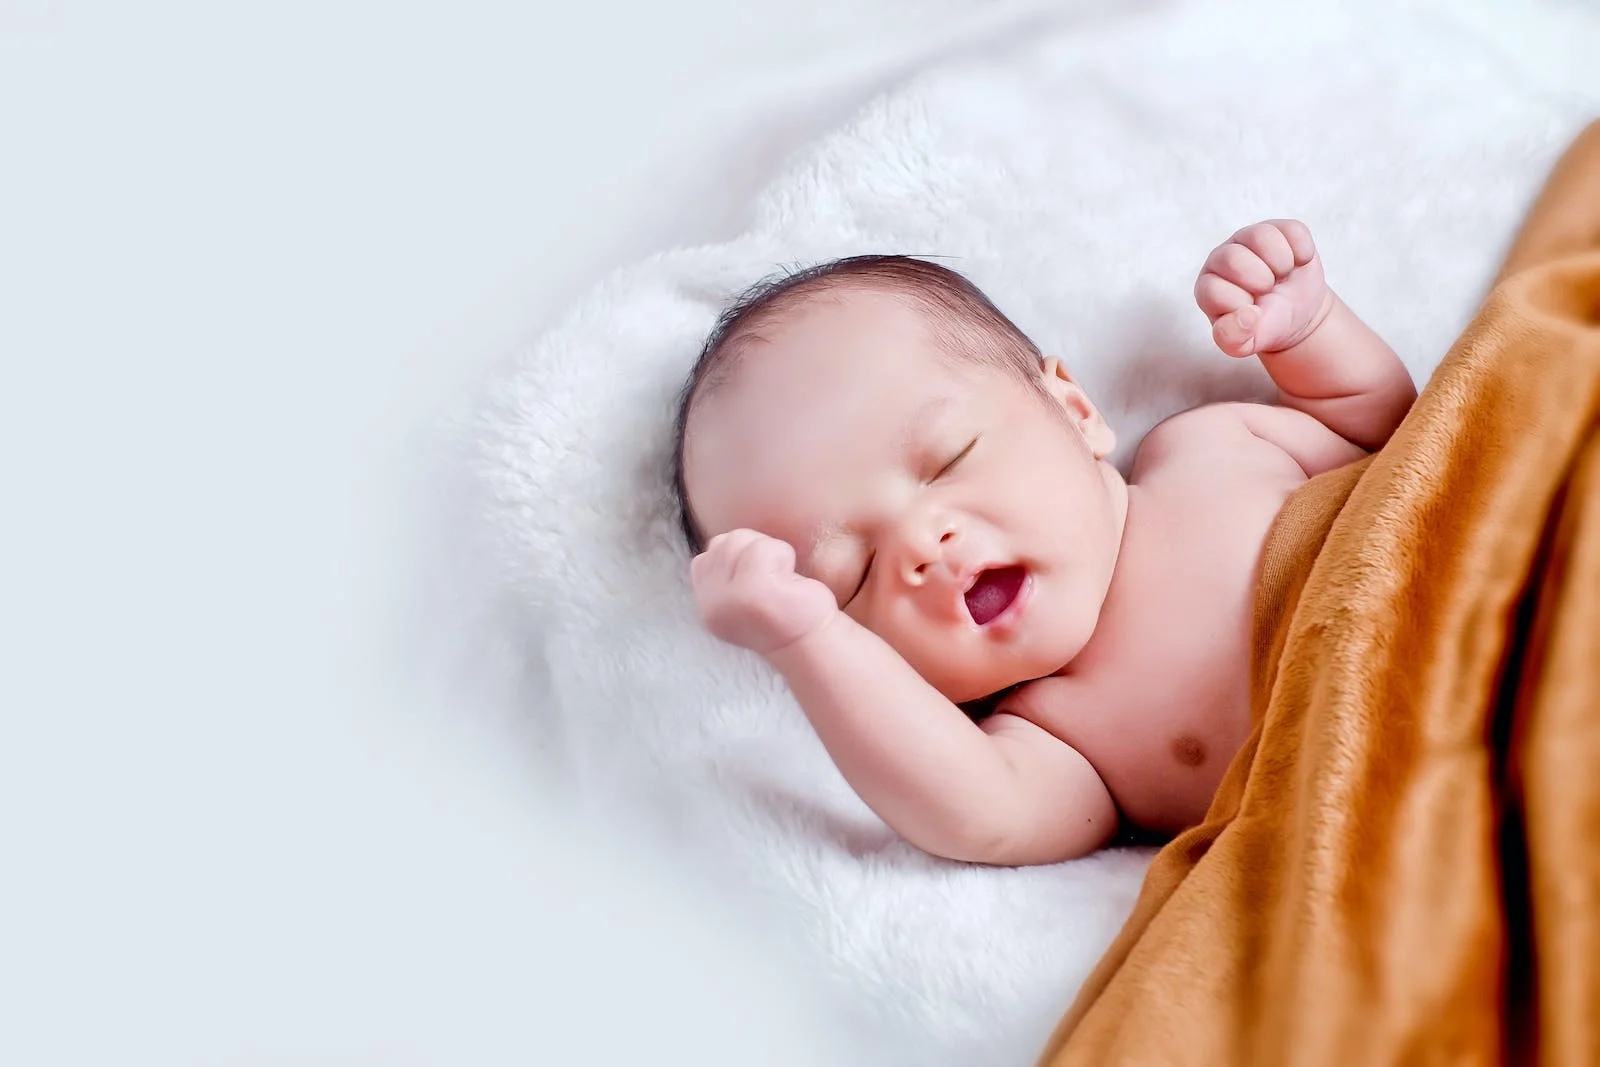 两个月大的宝宝发烧腹泻感染沙门氏菌竟是母乳惹的祸